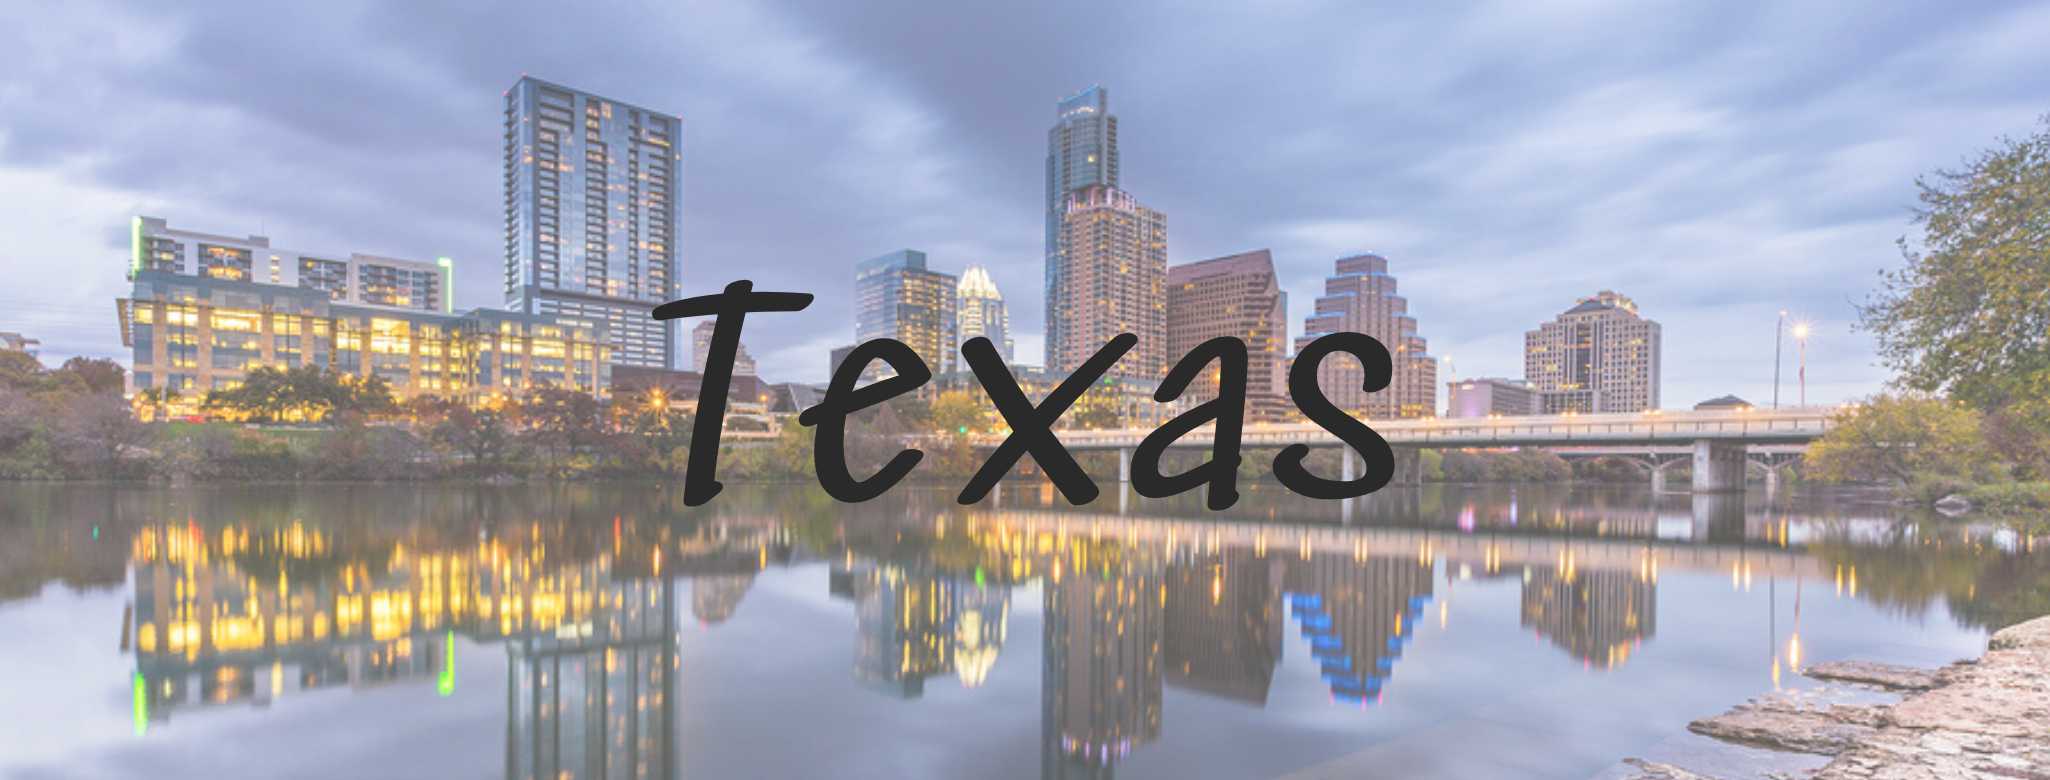 Austin Texas skyline